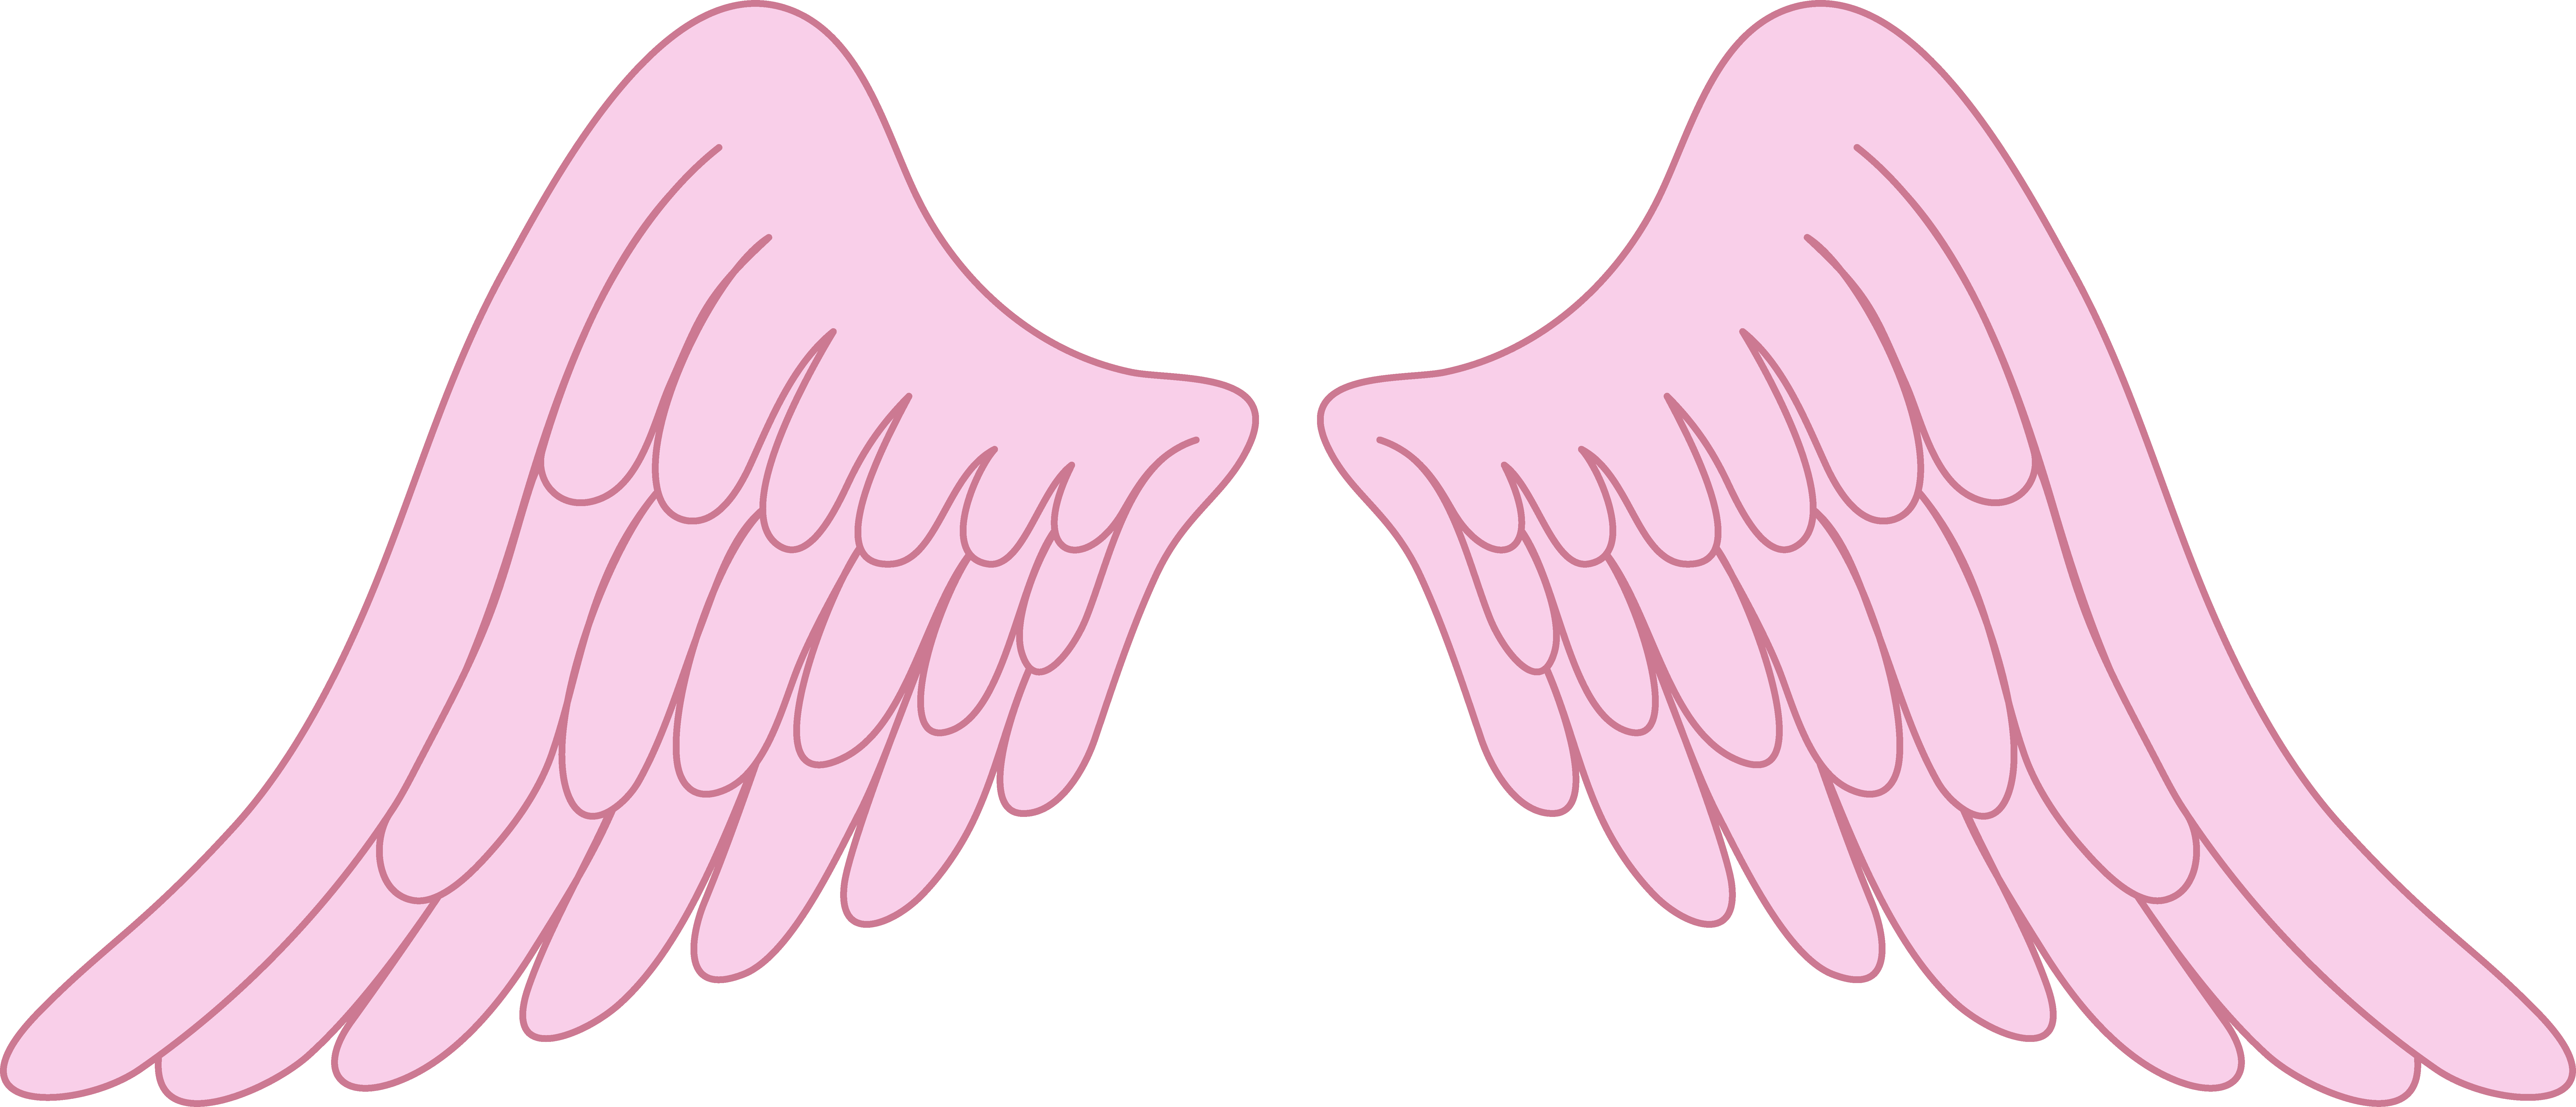 Pastel Pink Angel Wings - Simple Angel Wings Drawing (9453x4064), Png Download